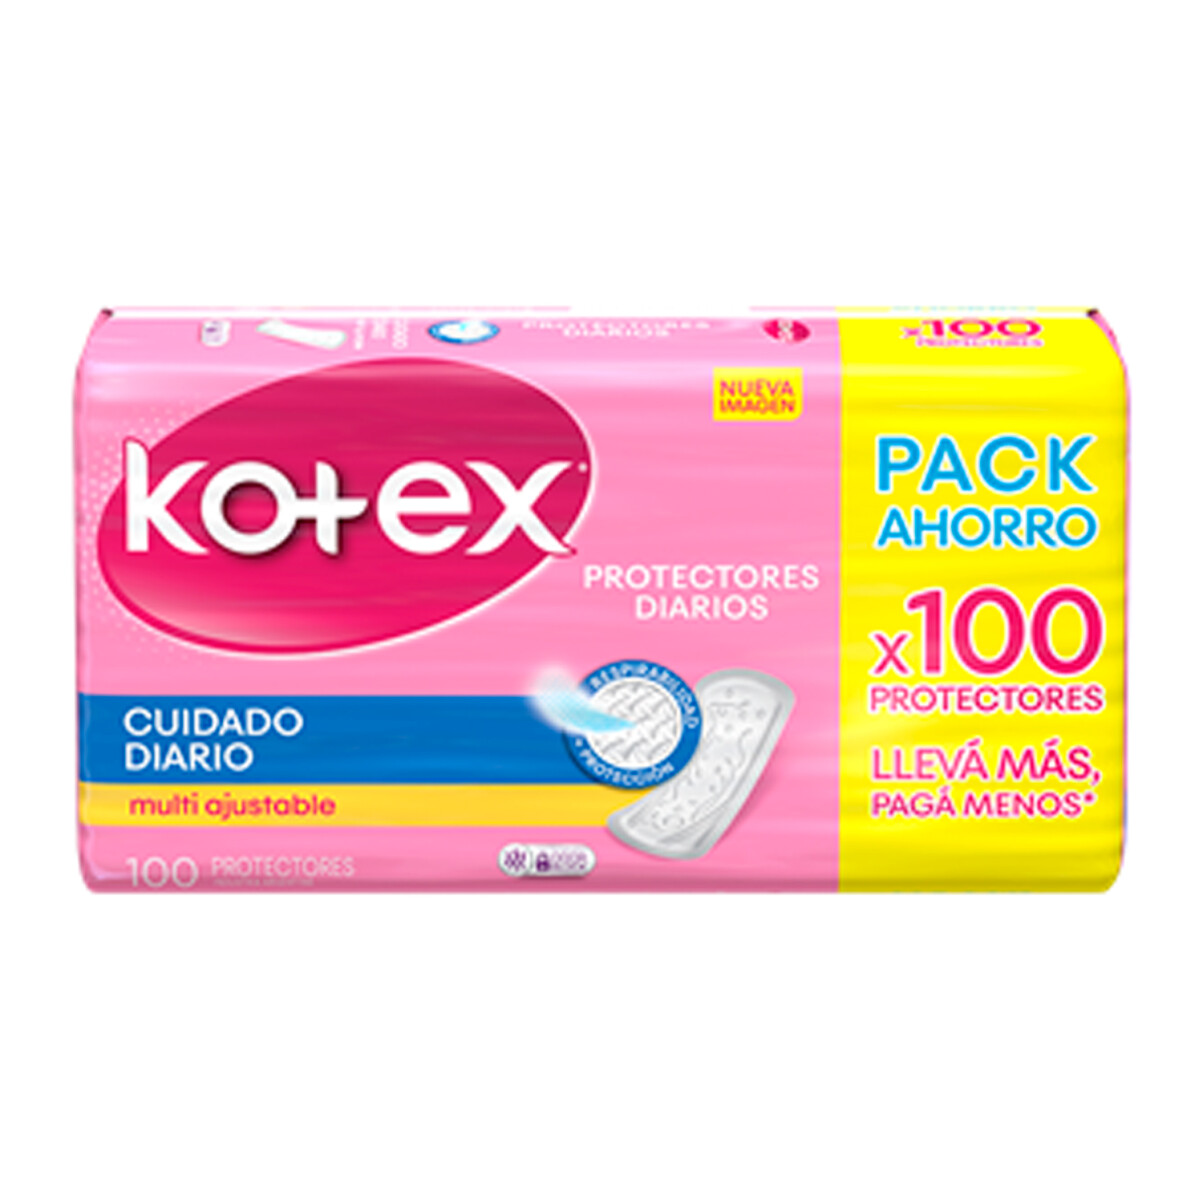 Protector Diario Kotex Cuidado Diario - Pack Ahorro X100 